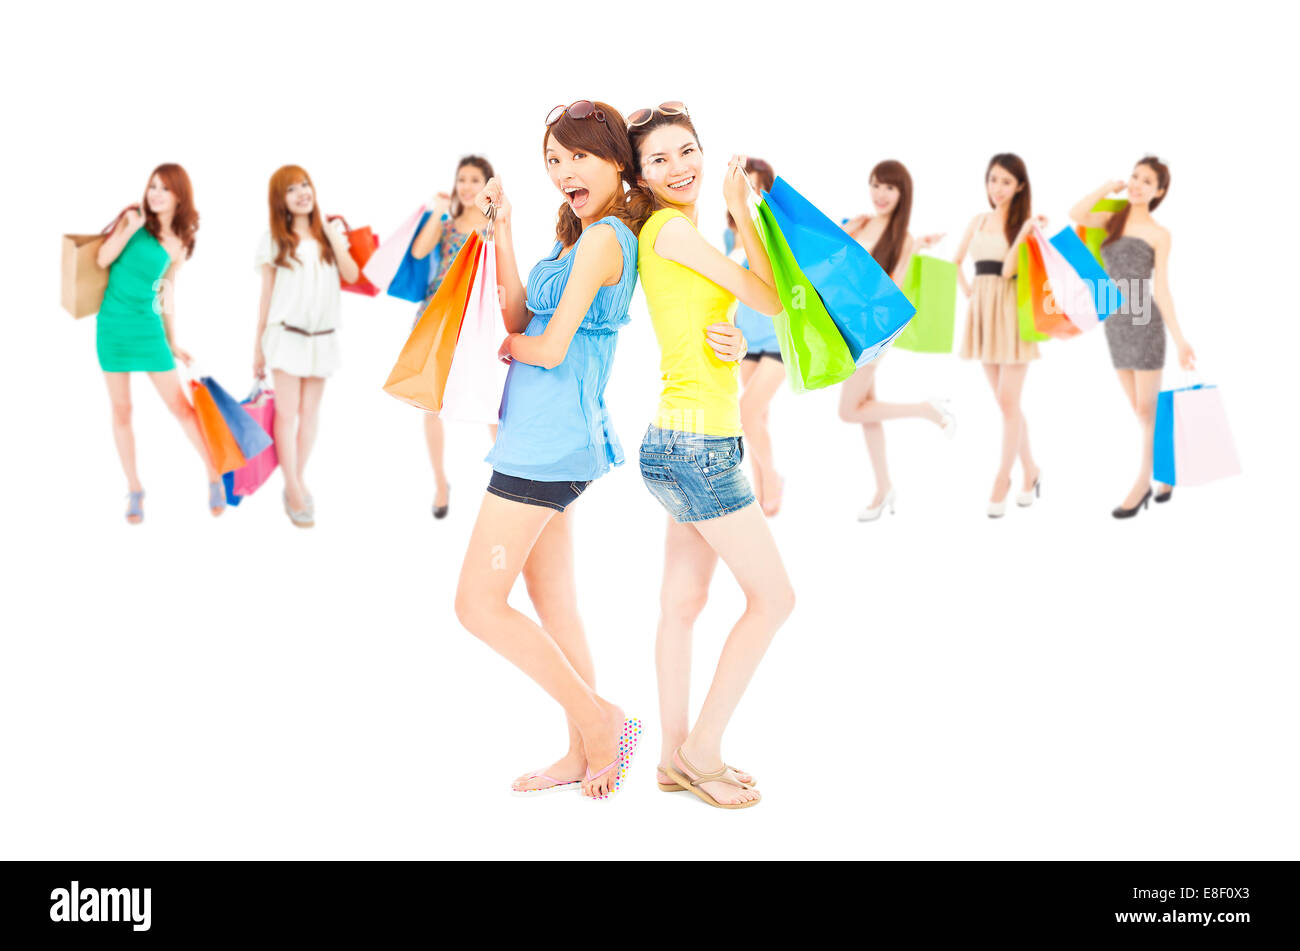 asiatischen shopping Frauengruppe halten Farbe Taschen. isoliert auf weißem Hintergrund Stockfoto